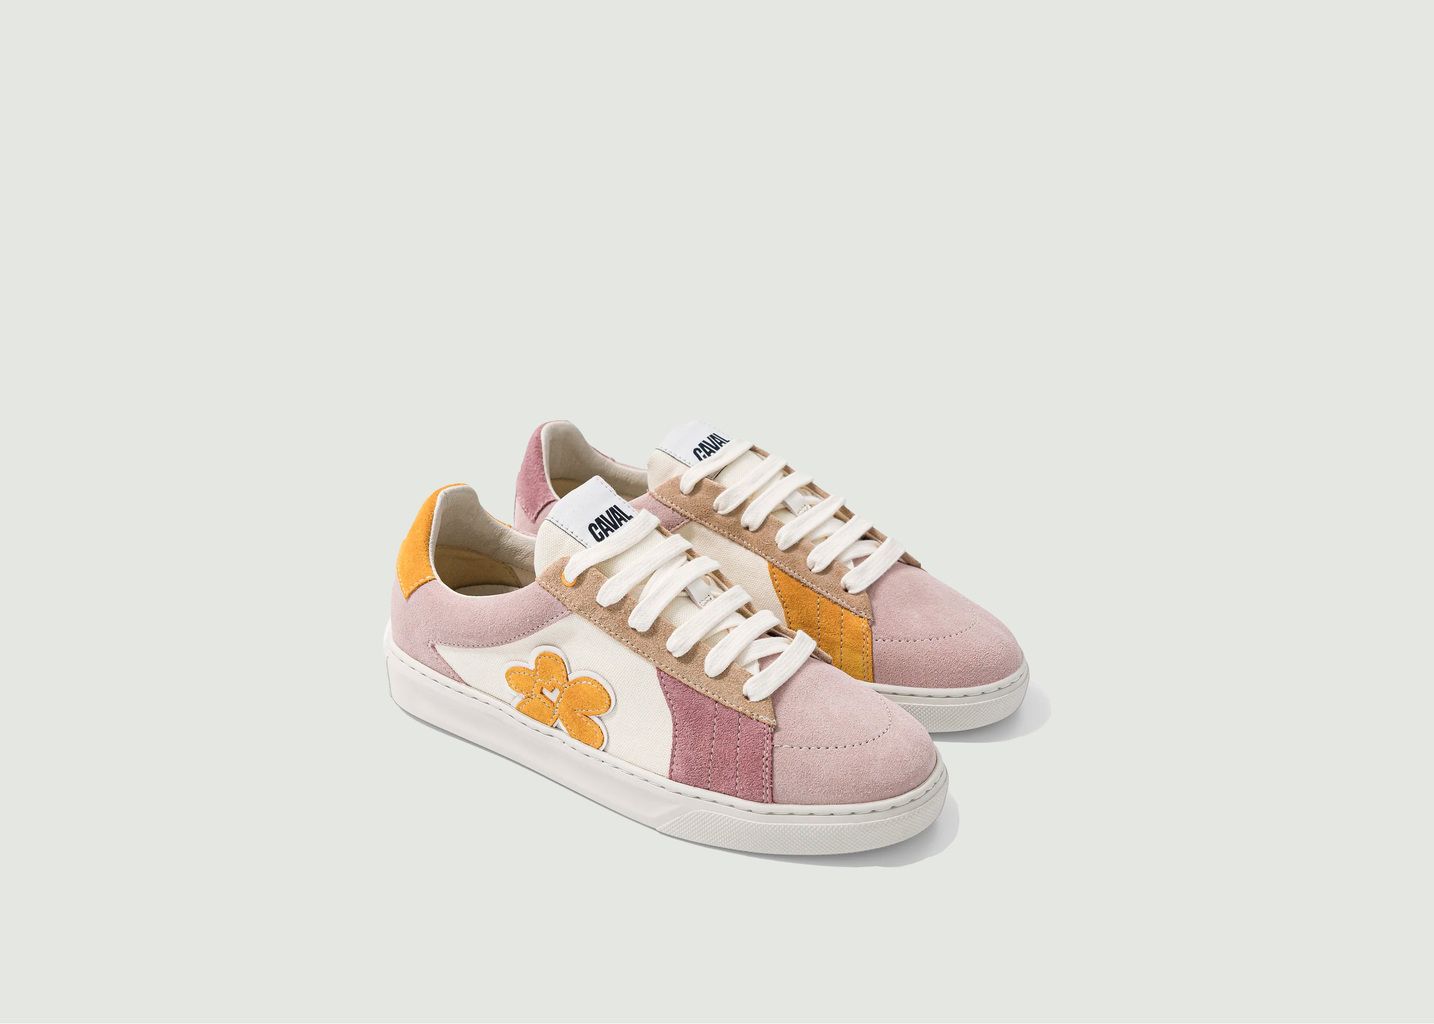 Sneakers Sweet Flower - Caval